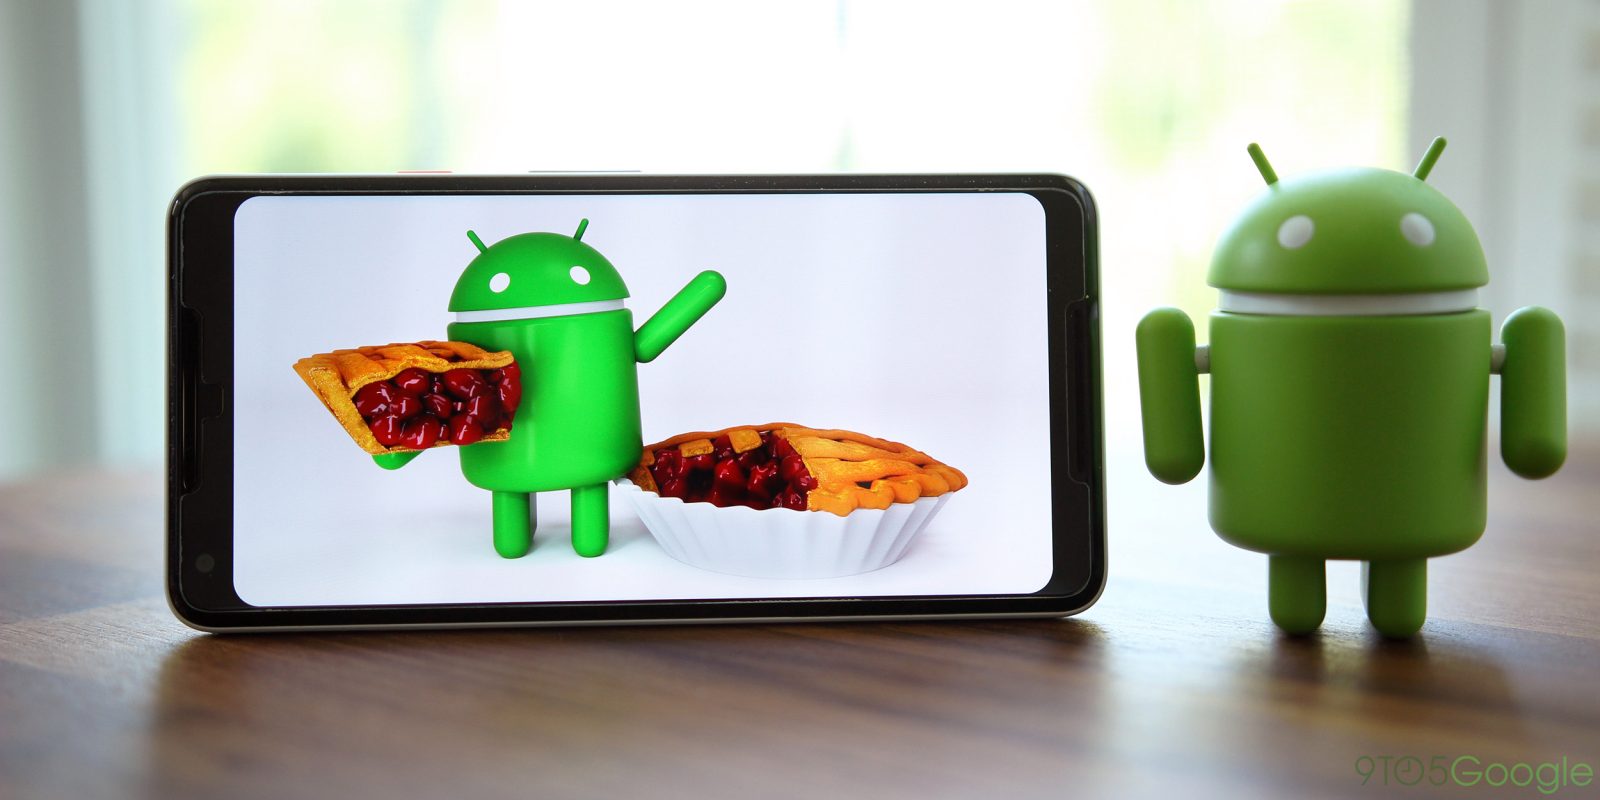 Google, Android 9 Pie’ı tanıttı